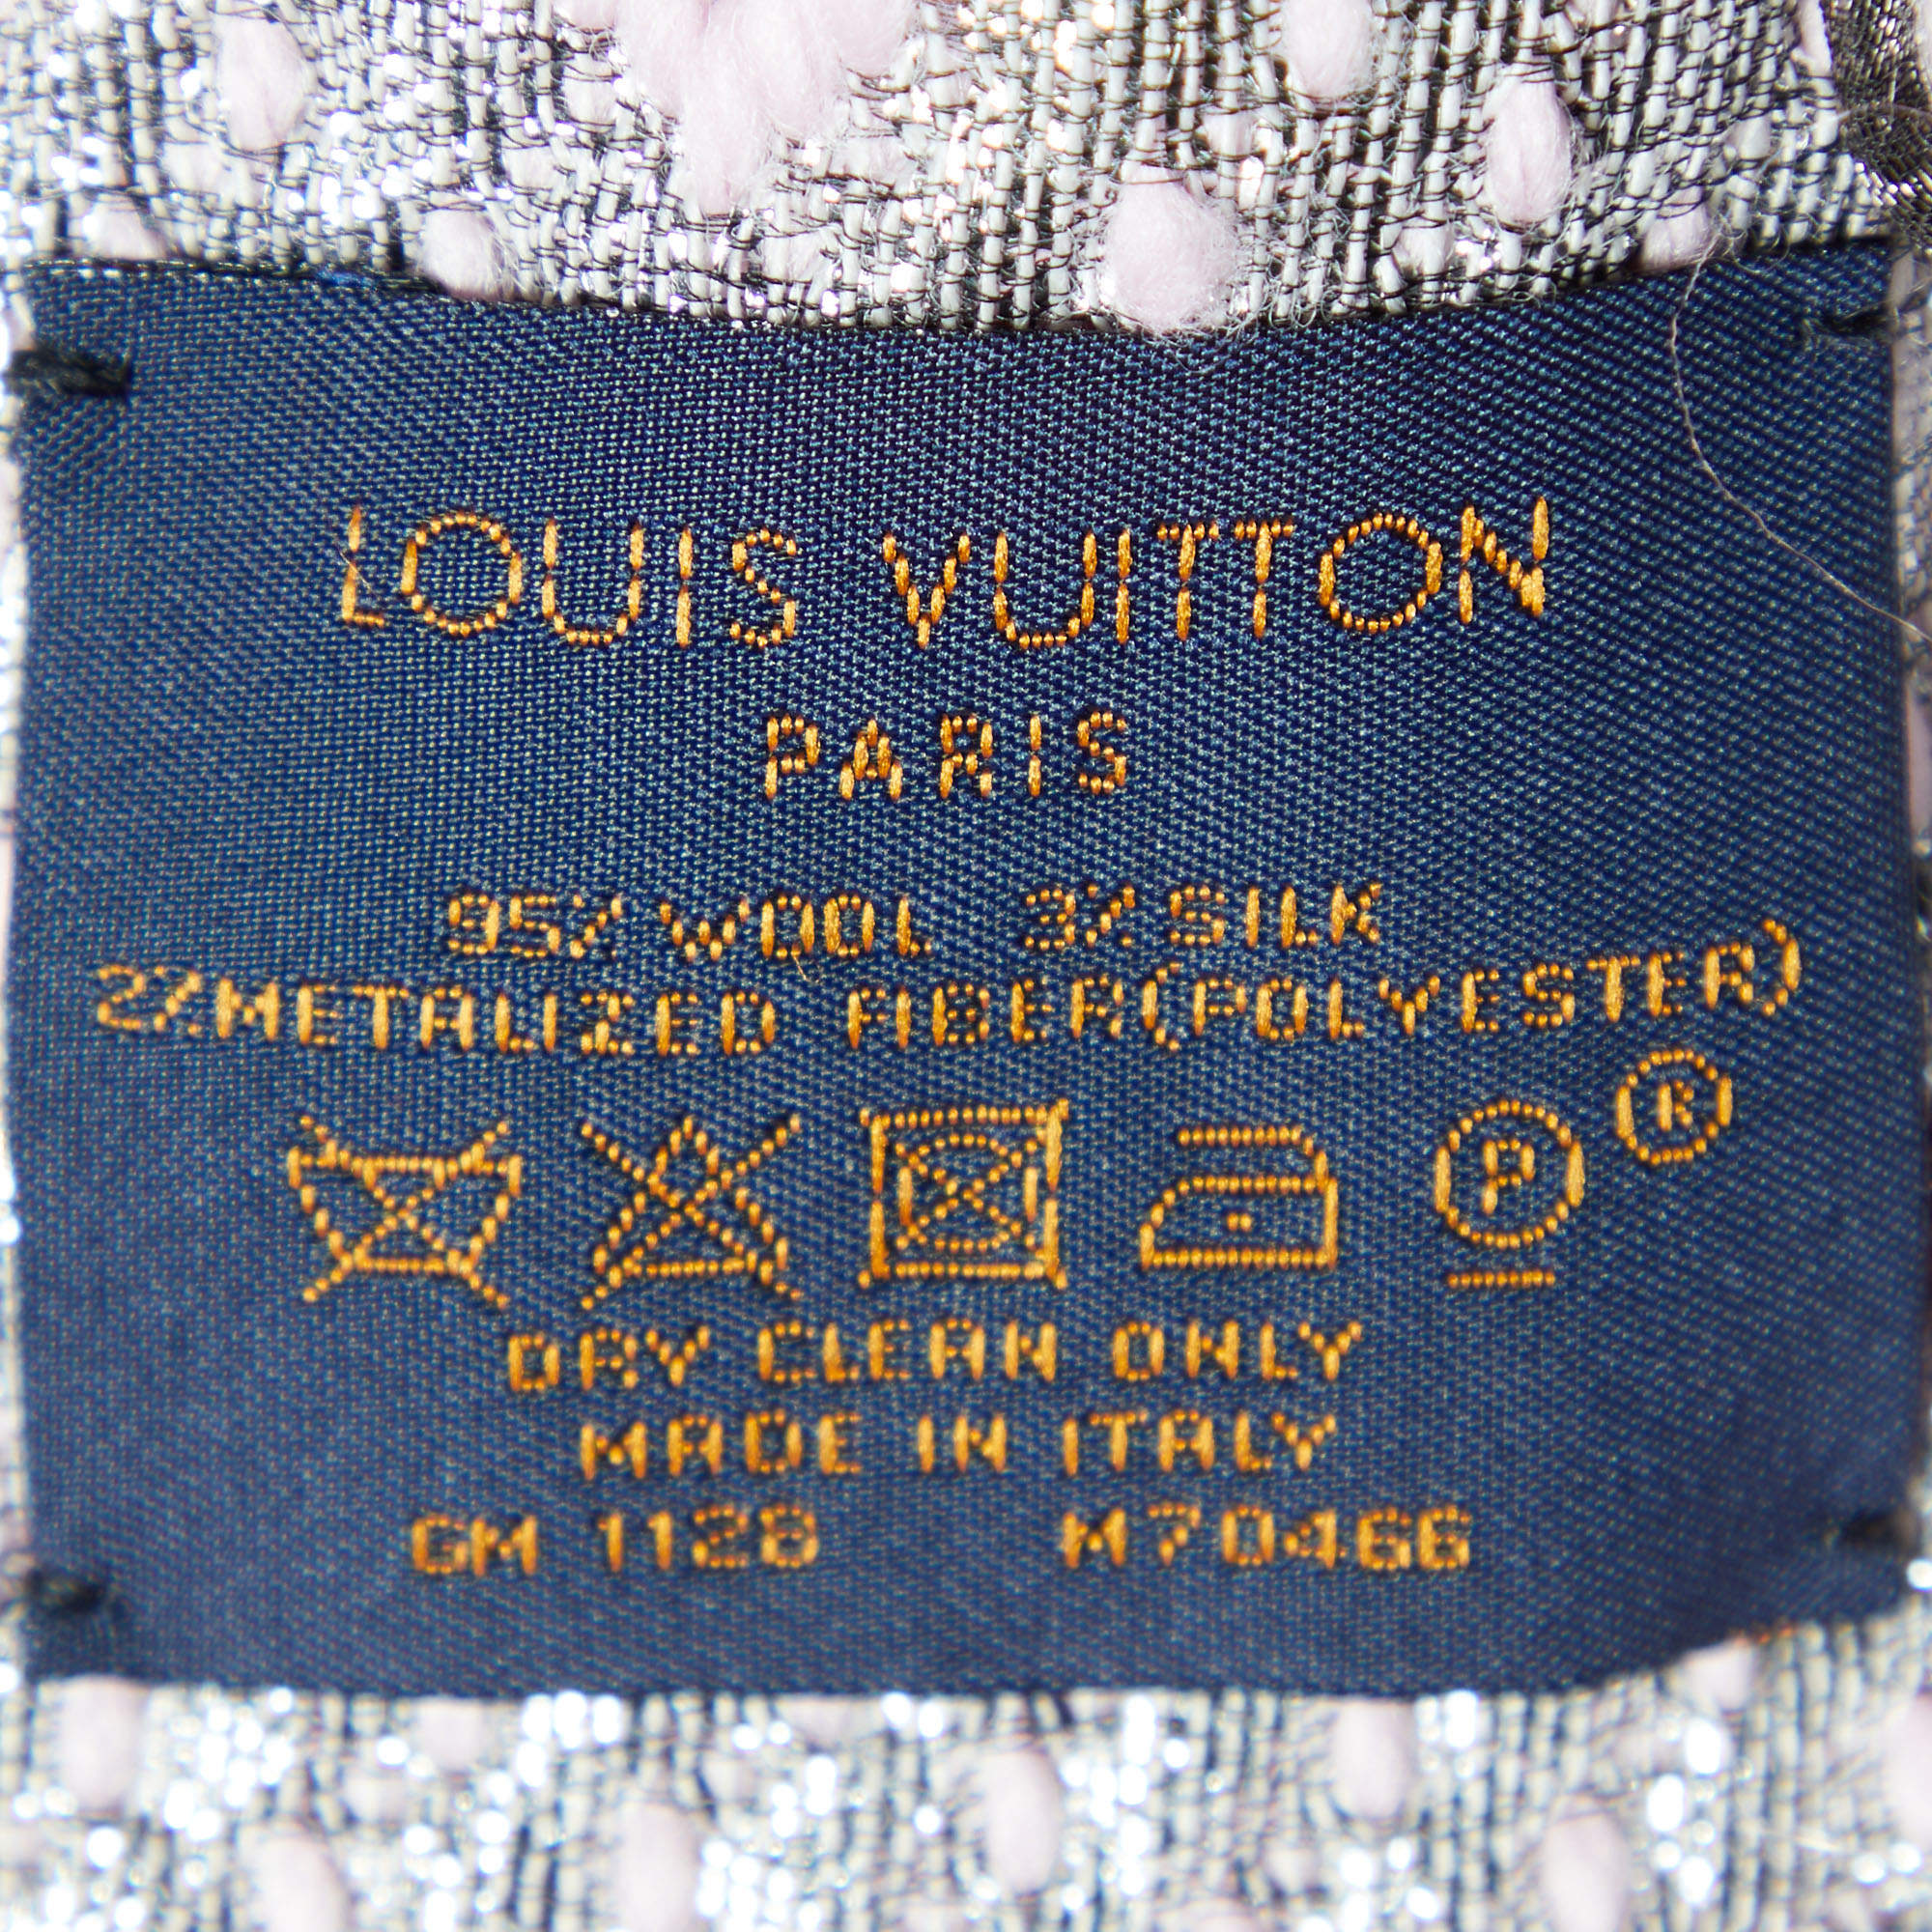 LOUIS VUITTON Scarf M70466 Escalp Logo Mania Shine wool/silk pink pink –